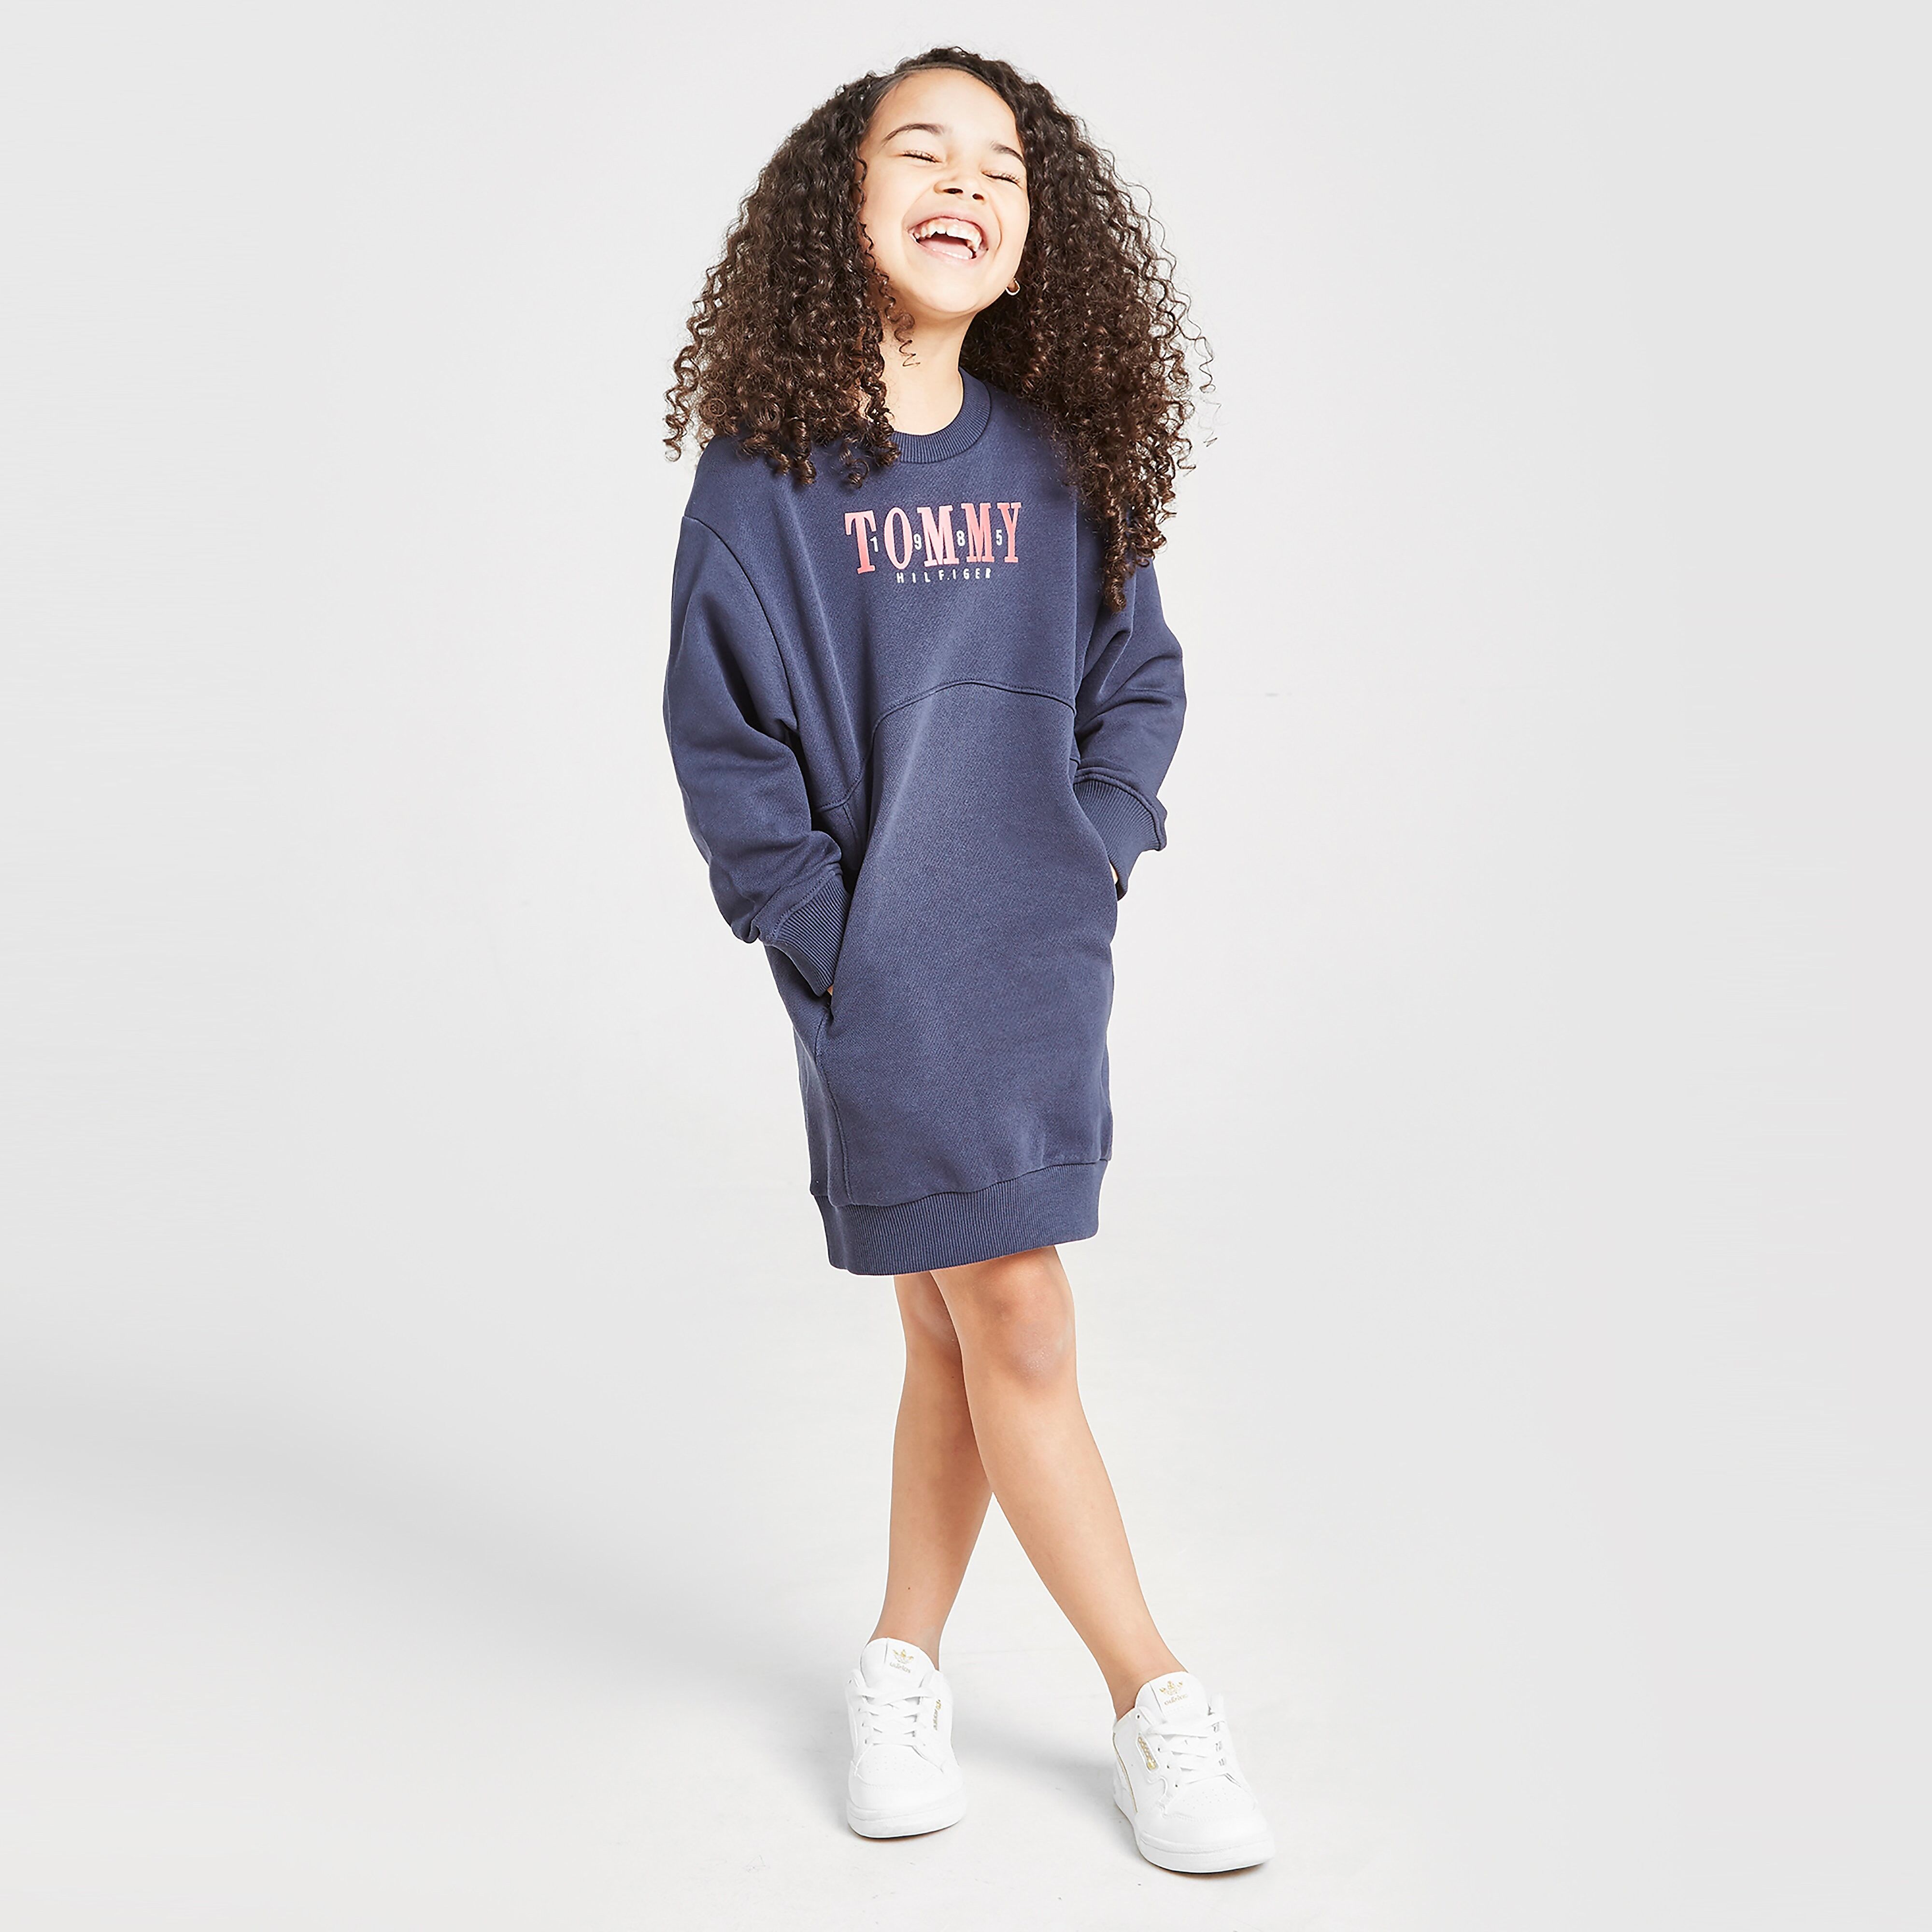 Tommy Hilfiger Girls' Logo Crew Sweatshirt Dress Children - Navy - Kids  size: 3Y